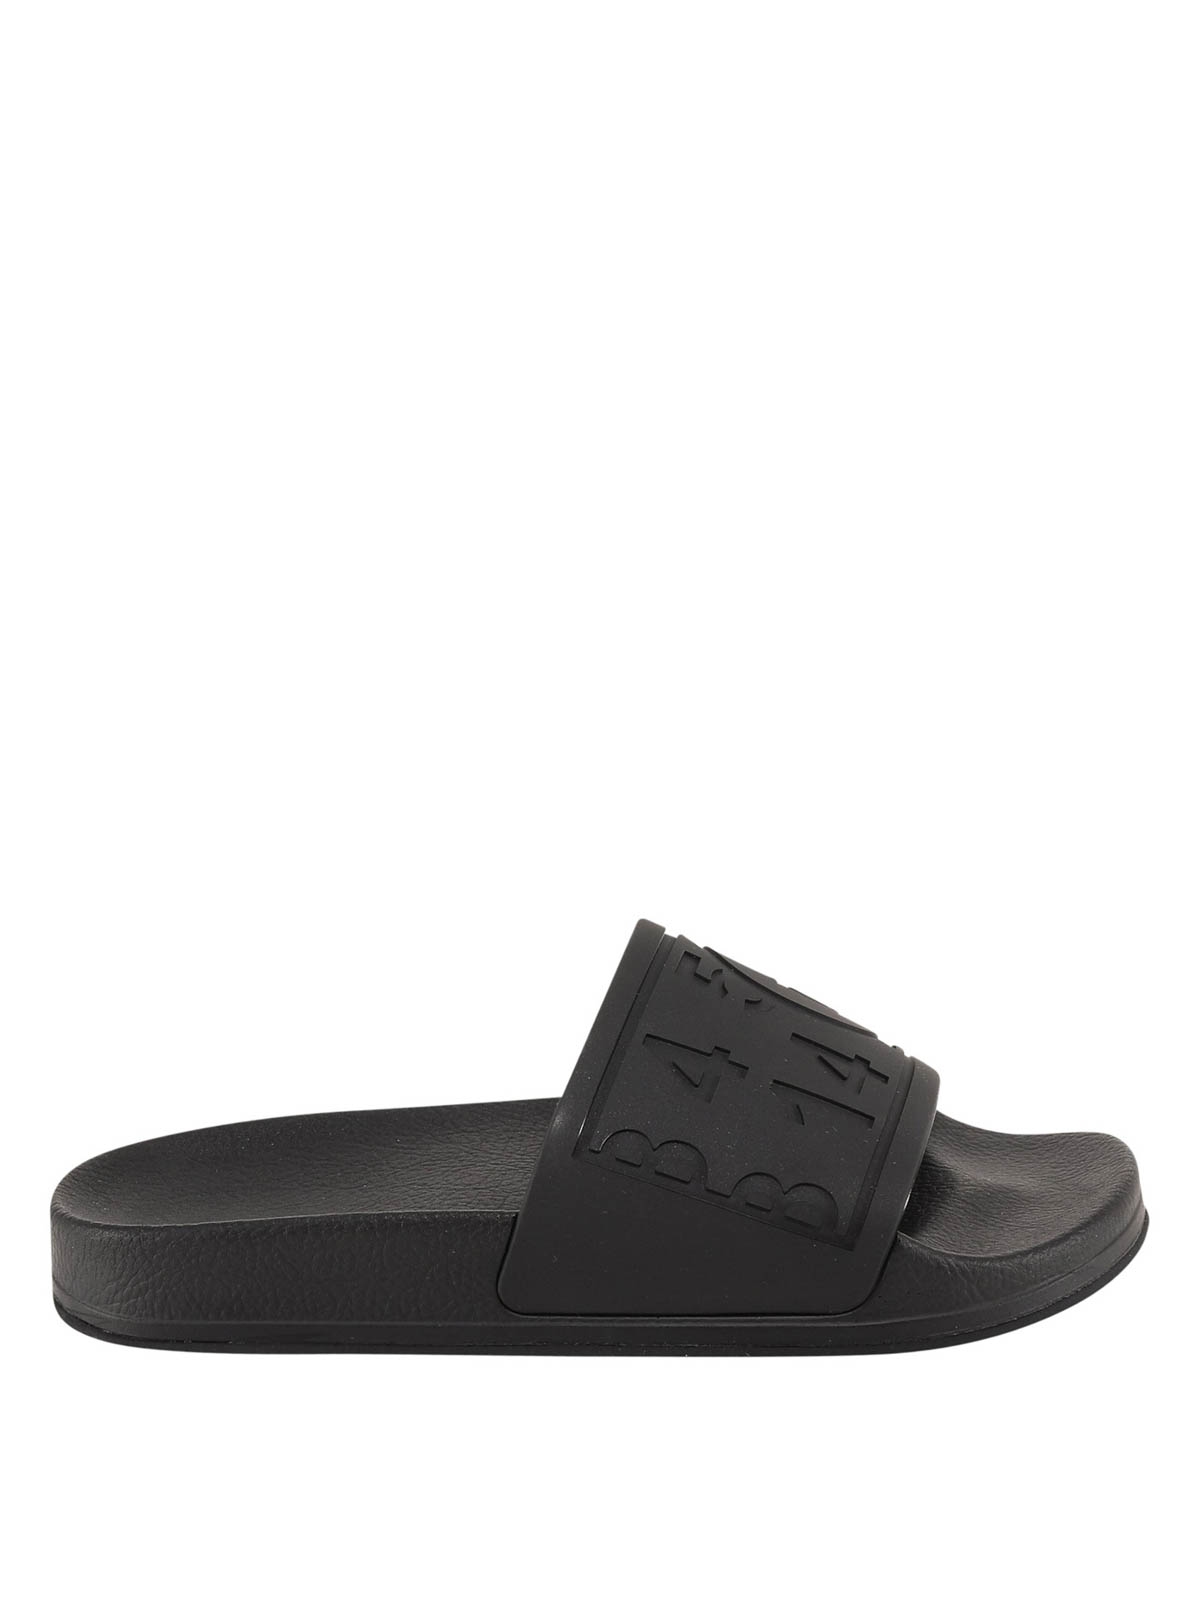 Flip flops MM6 Maison Margiela - Rubber sandals - S59WX0060P3996T8013